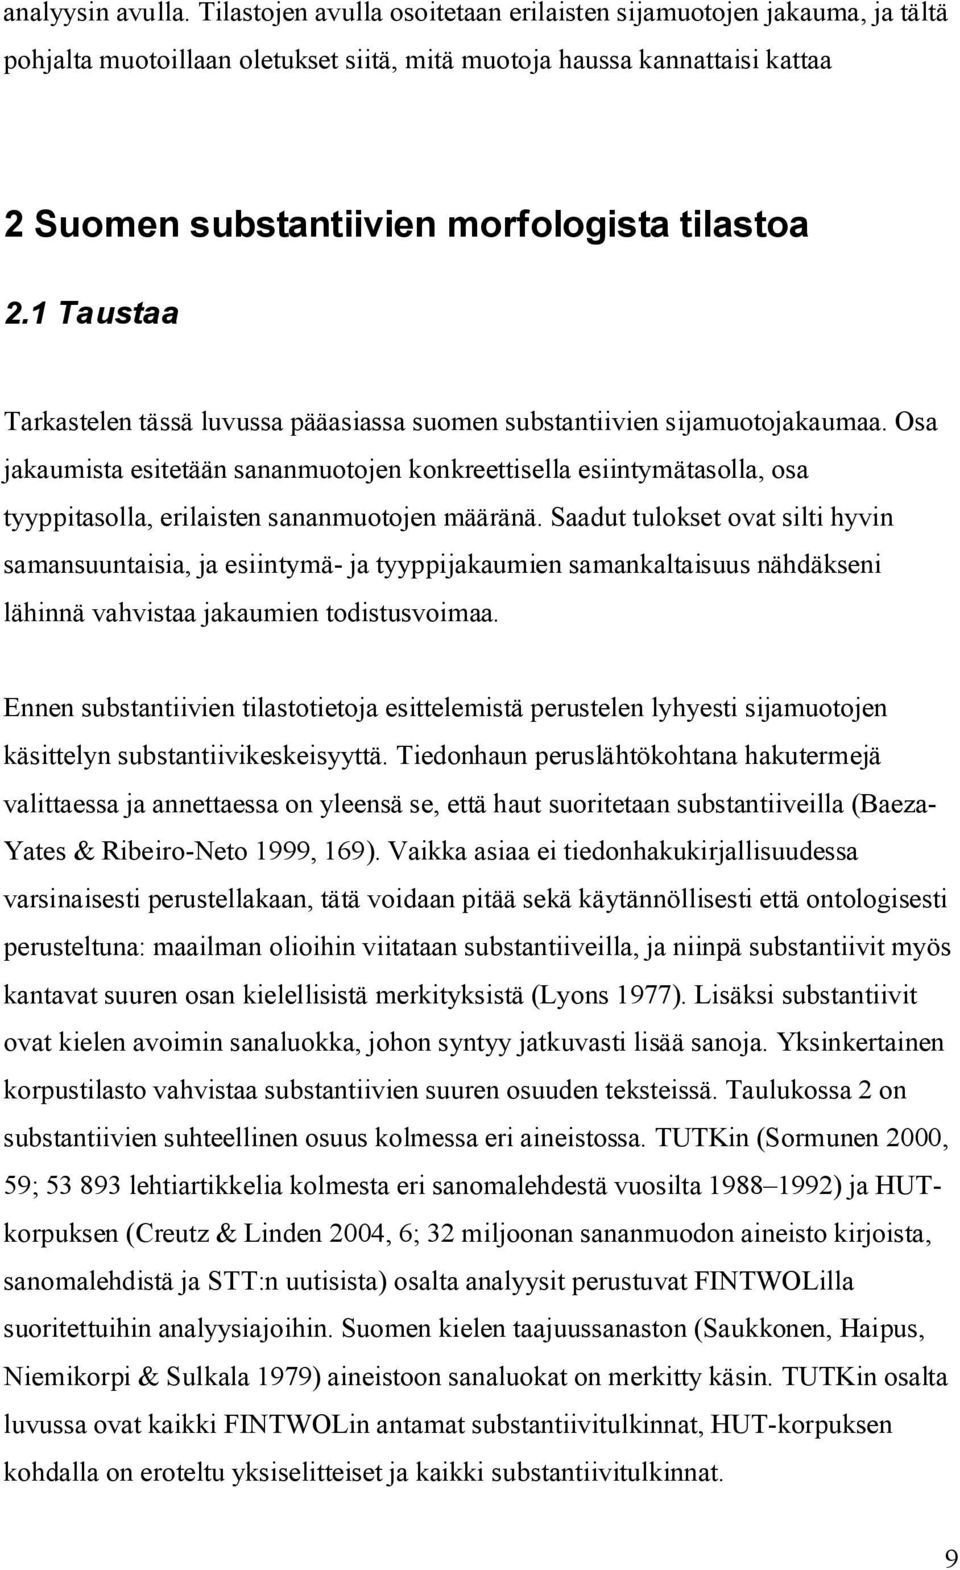 1 Taustaa Tarkastelen tässä luvussa pääasiassa suomen substantiivien sijamuotojakaumaa.